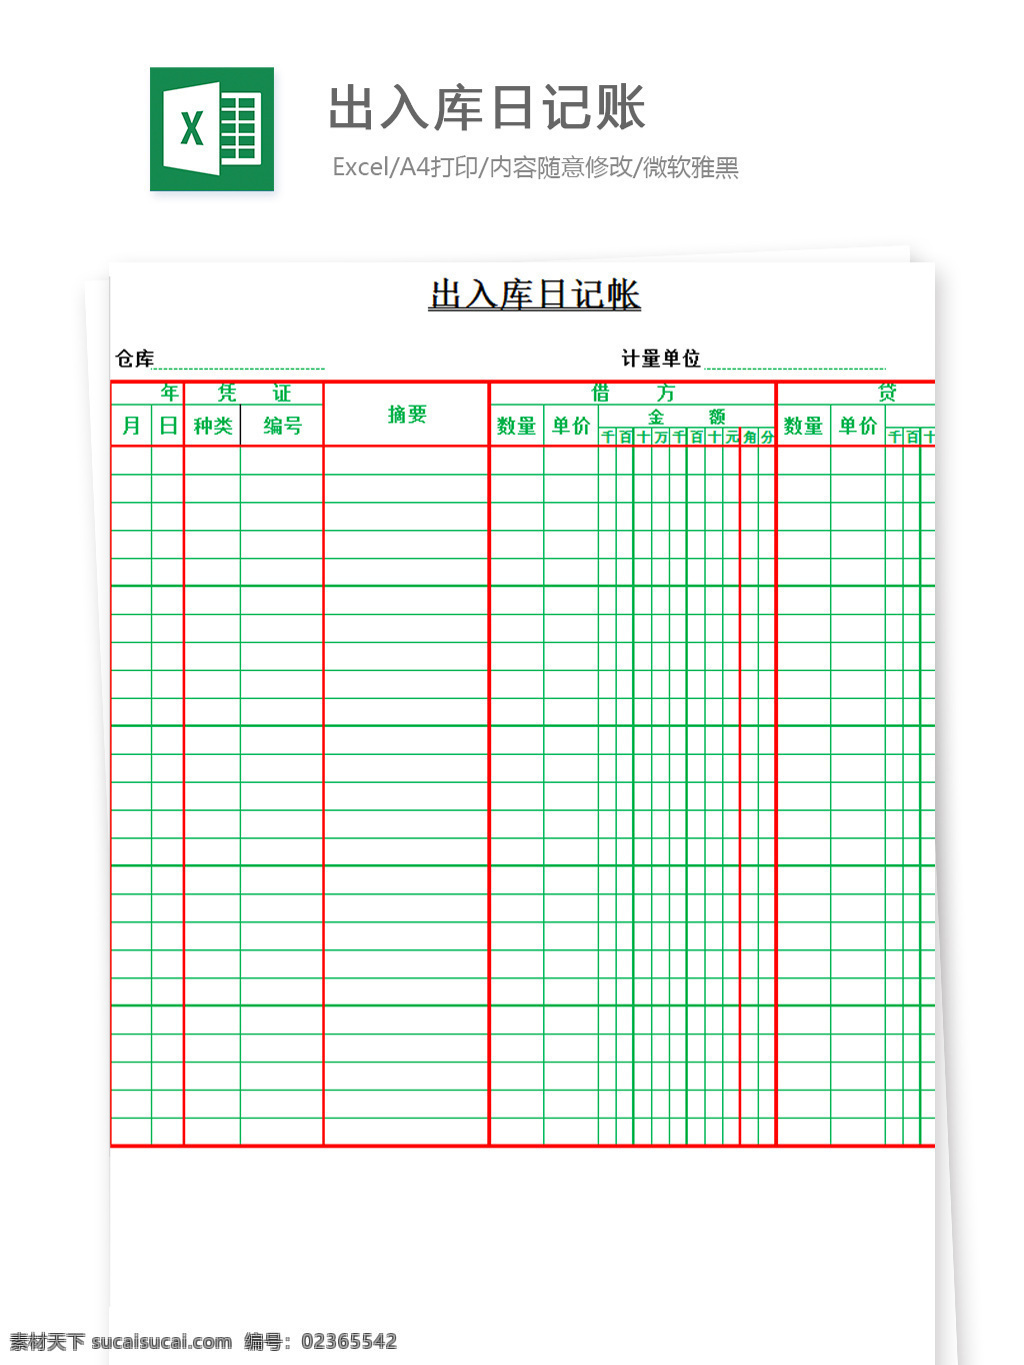 出入库 日记账 excel 文档 图表 图表模板 模板 表格 表格模板 自动变换 表格设计 出入库日记账 库房 出入 情况 记录表